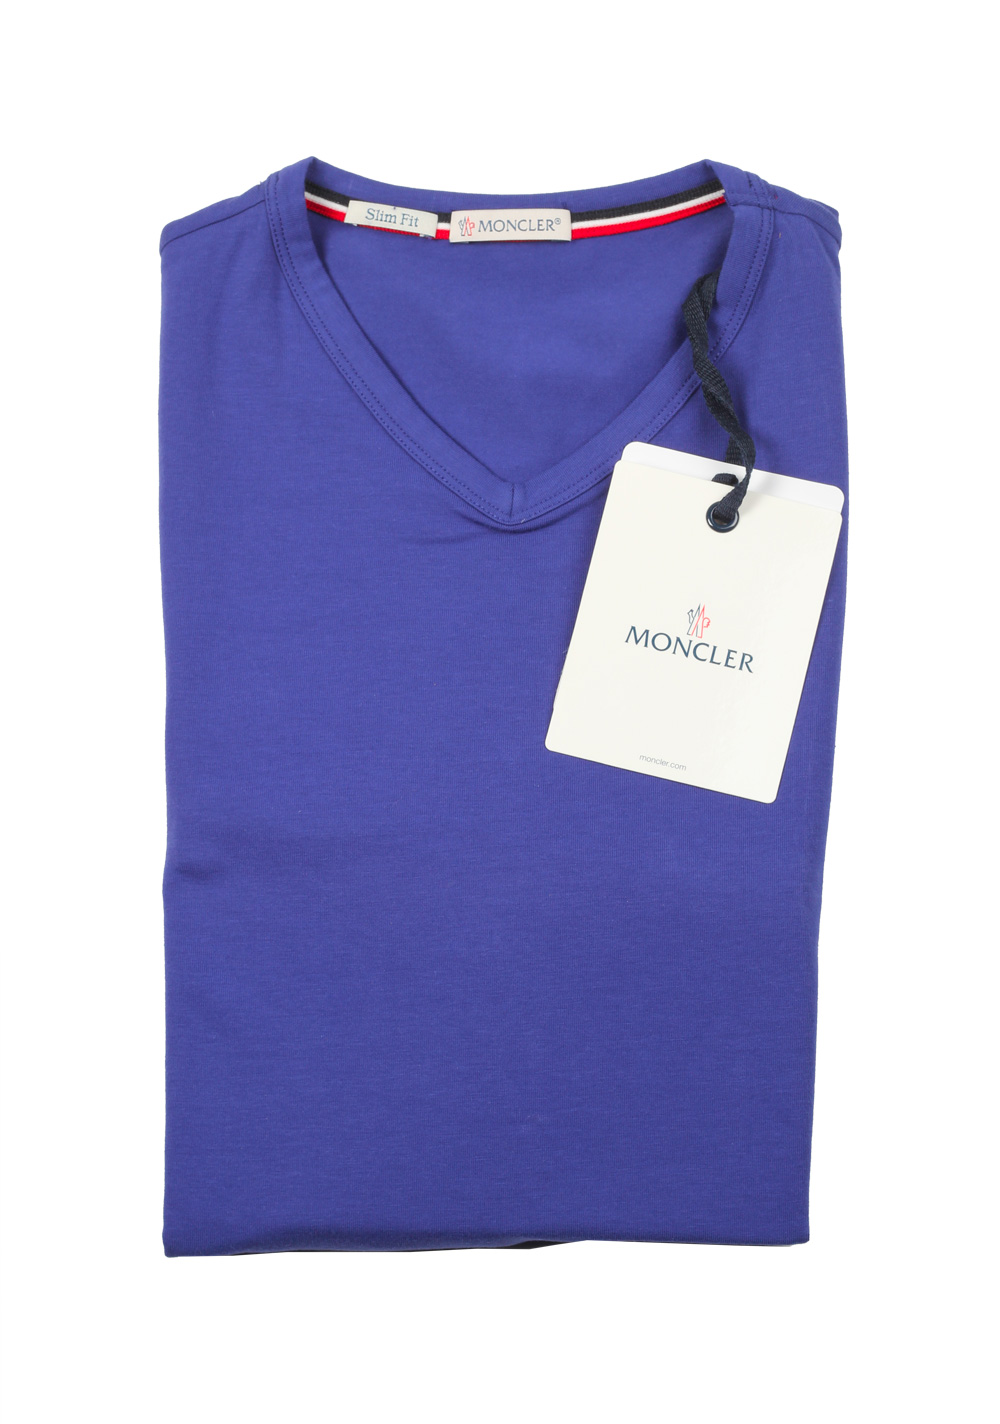 Moncler Lilac V Neck Tee Shirt Size M / 38R U.S. | Costume Limité